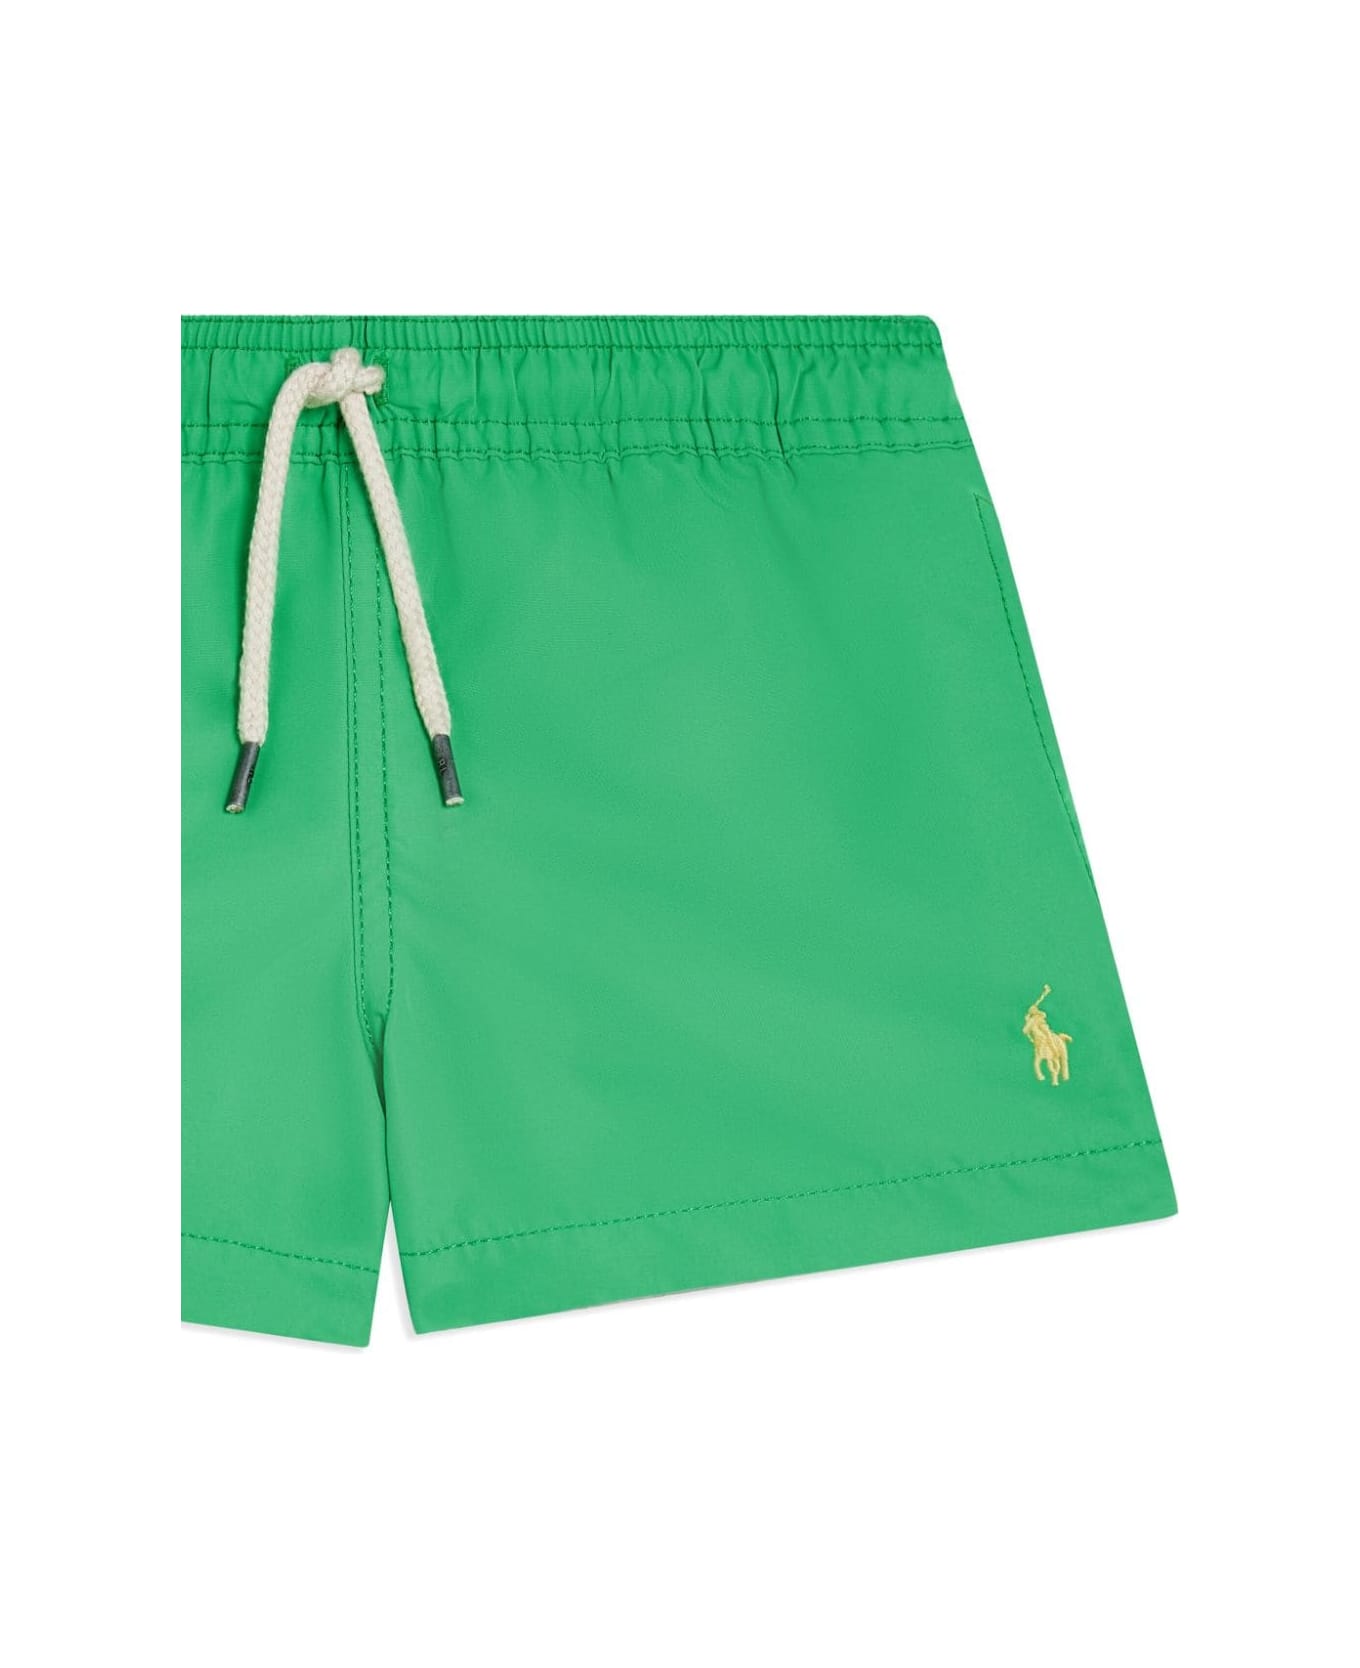 Ralph Lauren Green Swimwear With Yellow Pony - Green